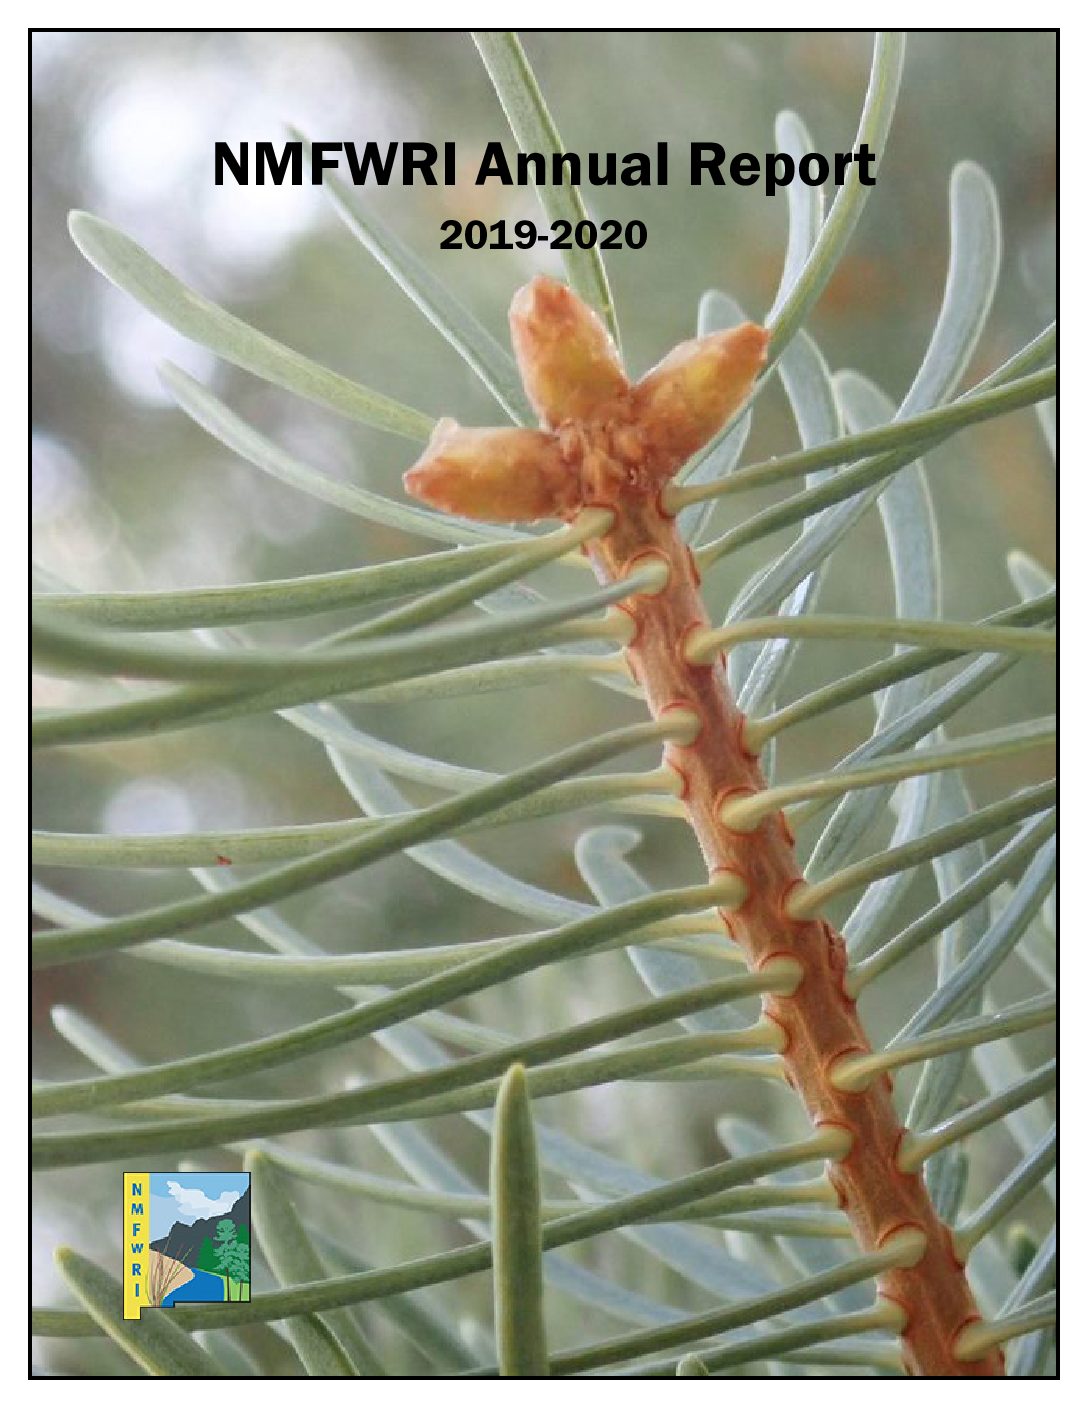 NMFWRI Annual Report 2019-2020